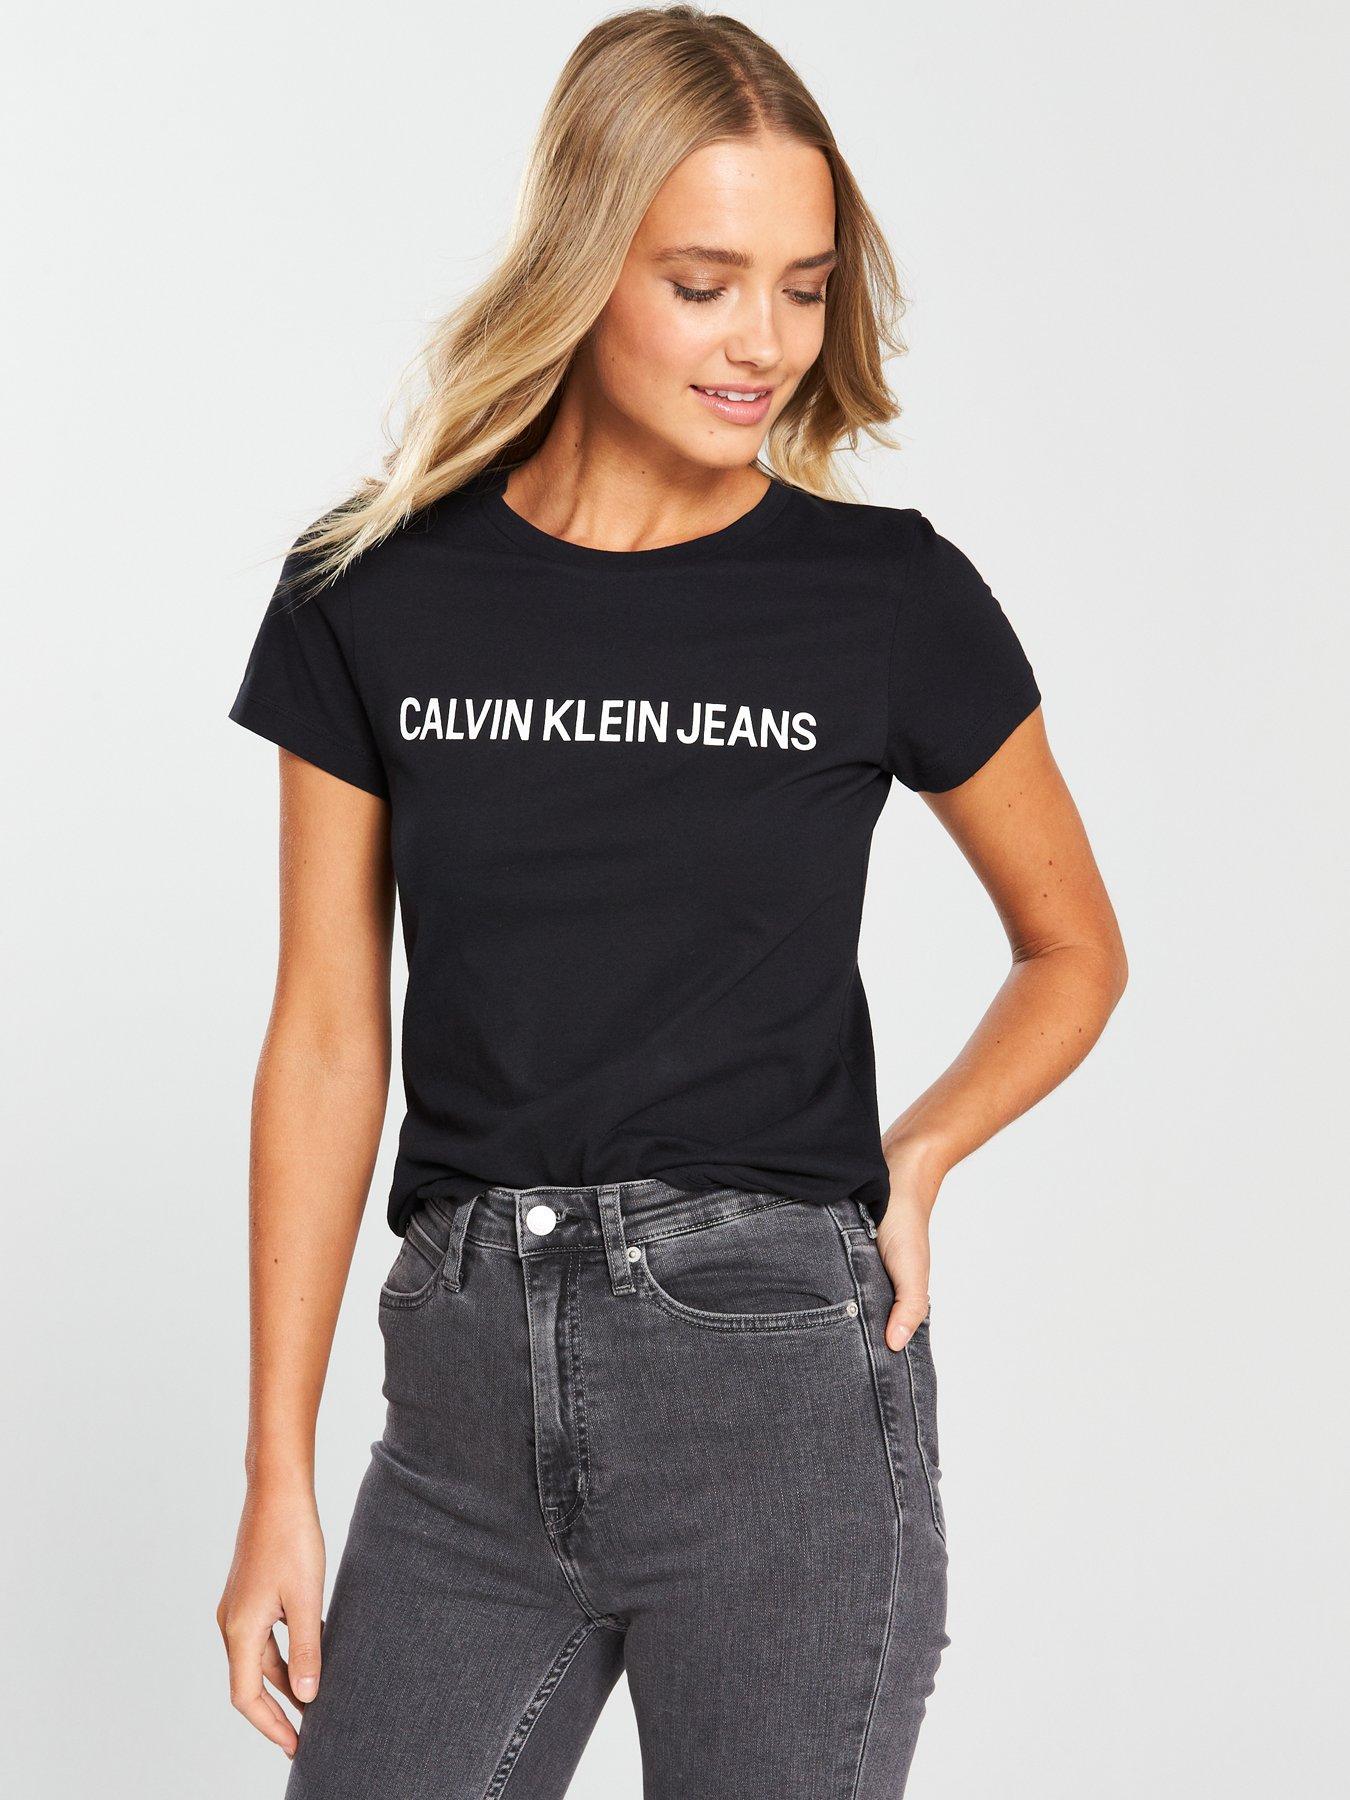 calvin klein's jeans